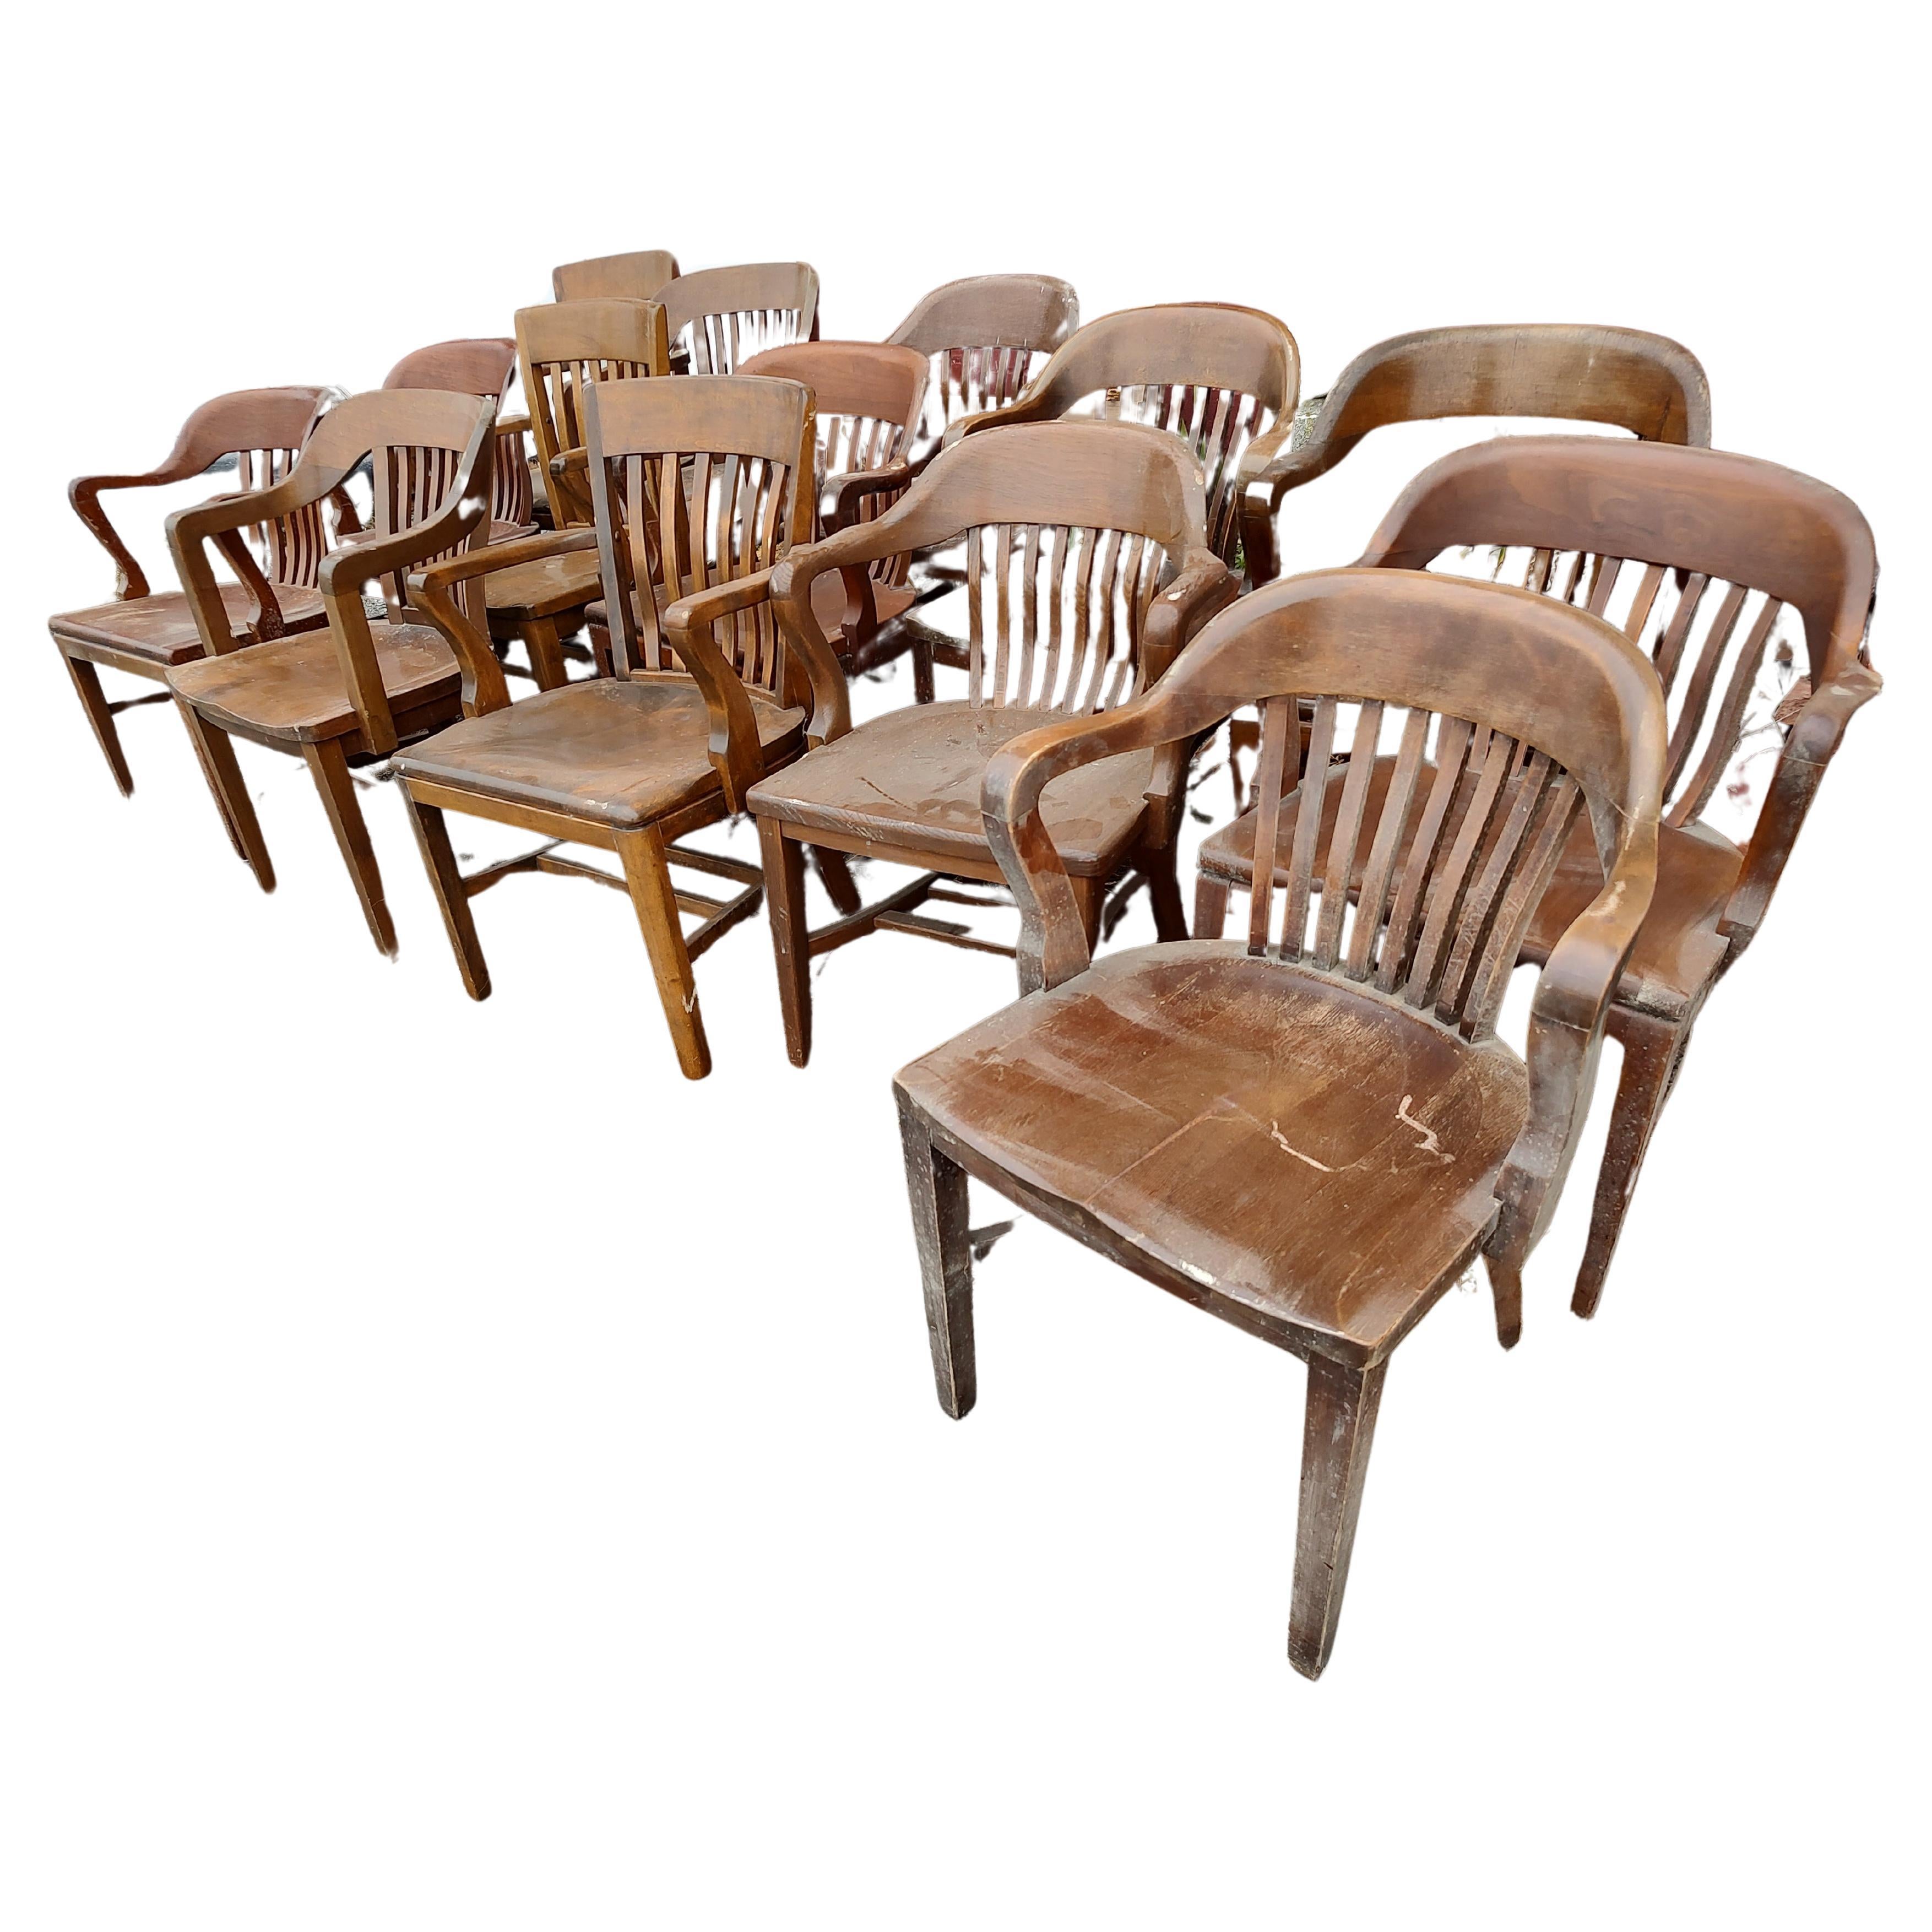 Fabuleuse collection de chaises de banquier en bois dur que l'on trouve souvent dans les bureaux, les salles de jury, les centres de conférence, etc. Fabriquées en chêne, érable et noyer, ces chaises sont des sièges de qualité très résistants,